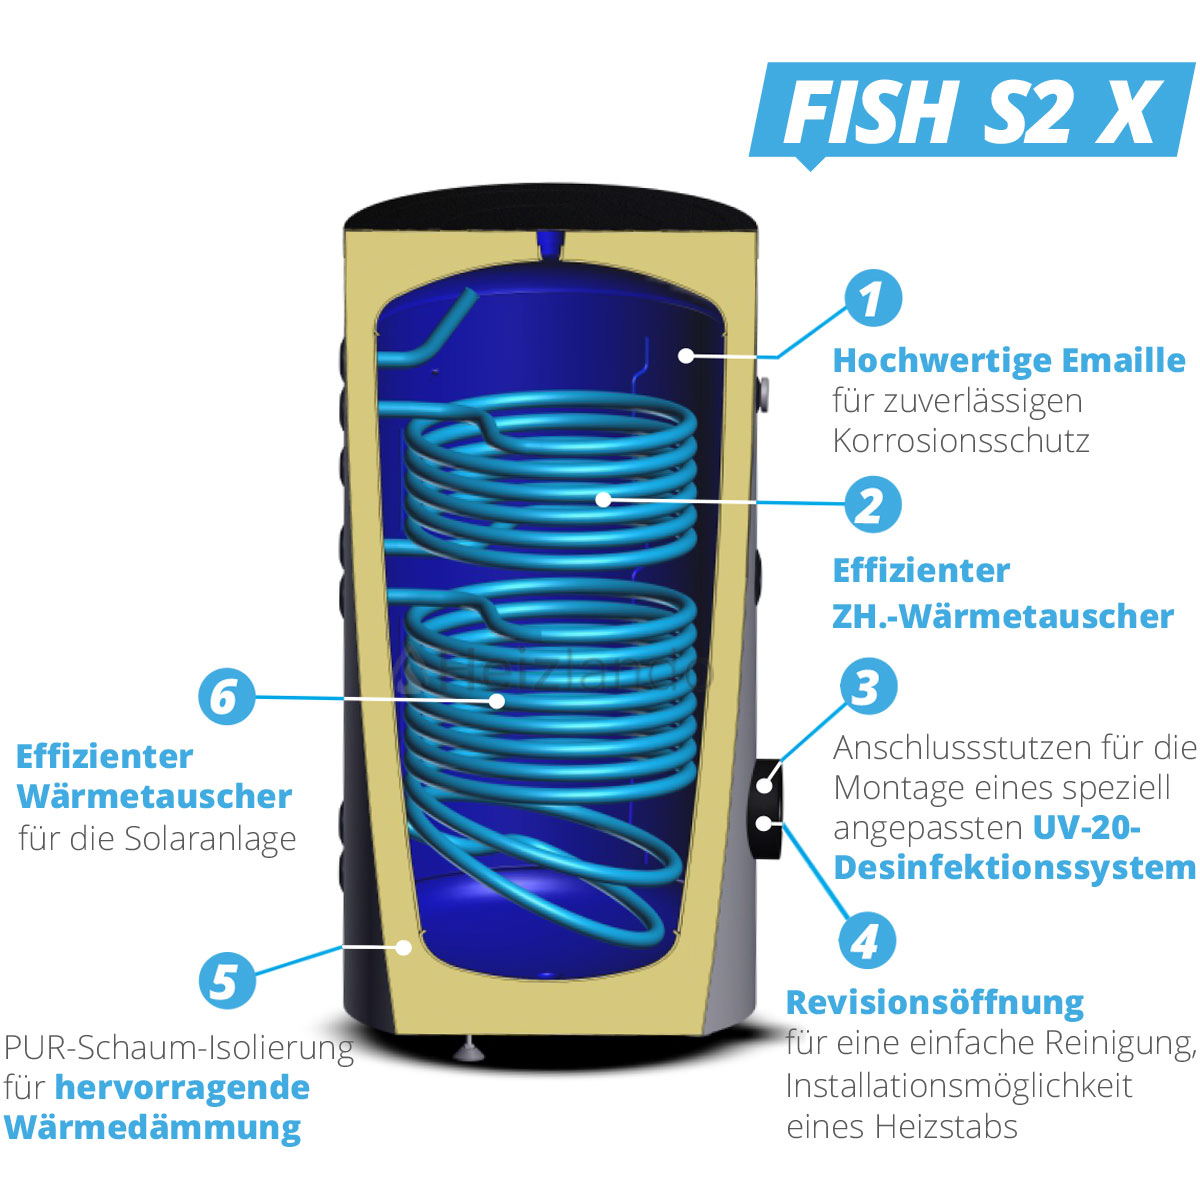 Sunex Warmwasser- und Solarspeicher Fish S2 mit 2 Wärmetauschern 500 Liter